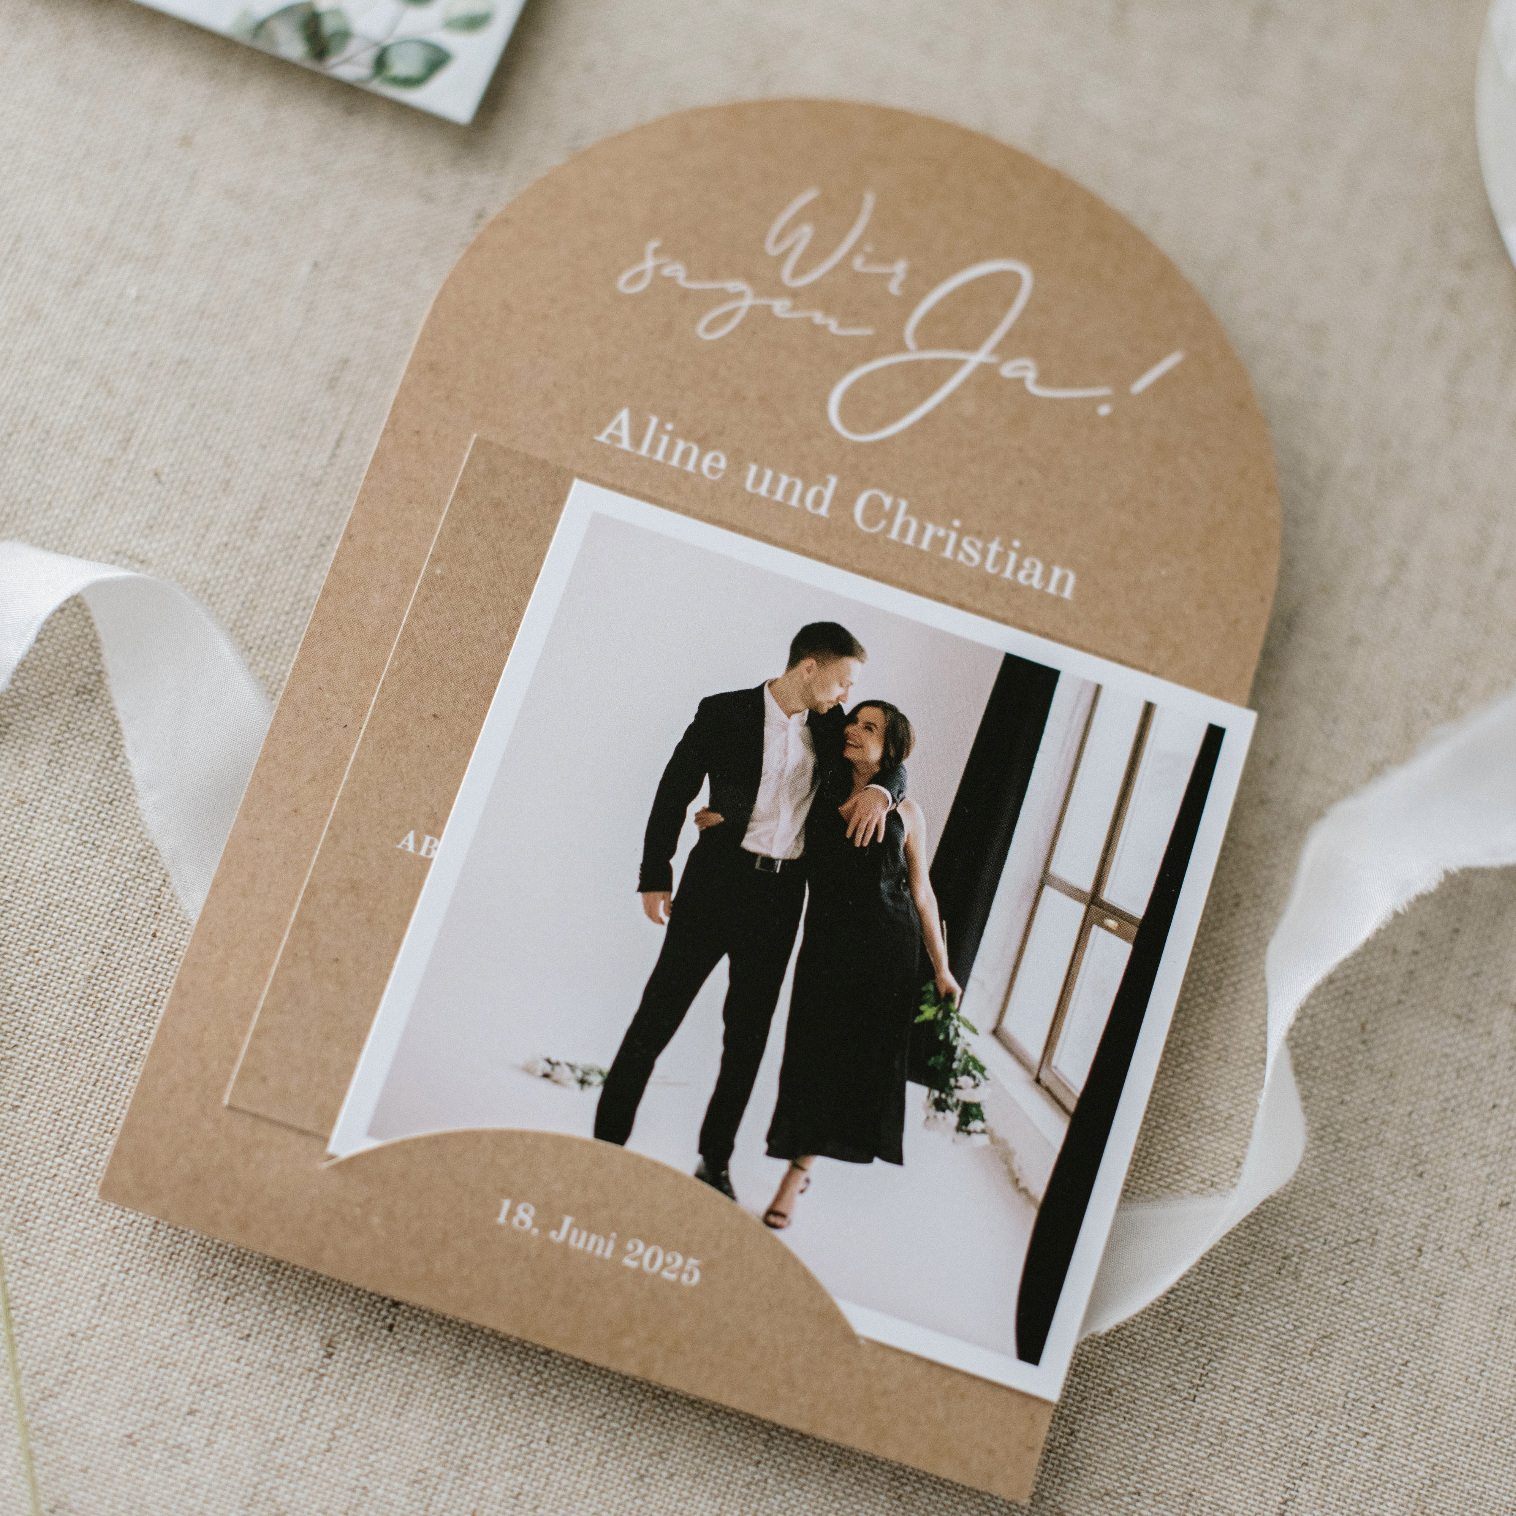 Originell geformte Hochzeitseinladung im Kraft-Look mit Foto